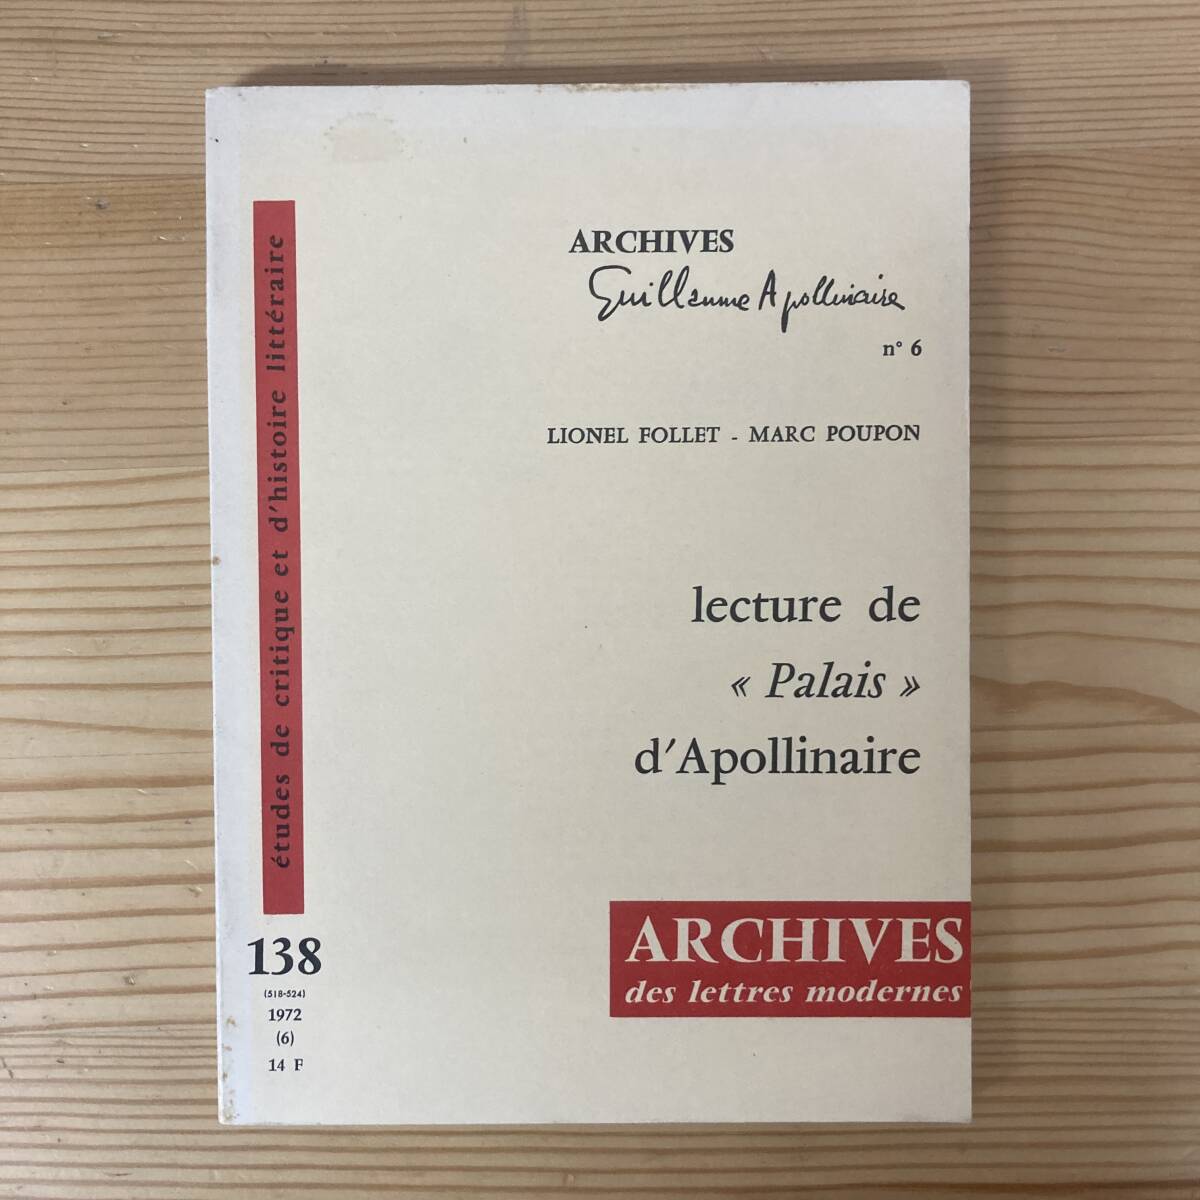 【仏語洋書】lecture de Palais d’Apollinaire / Lionel Follet, Marc Poupon（著）【ギョーム・アポリネール】_画像1